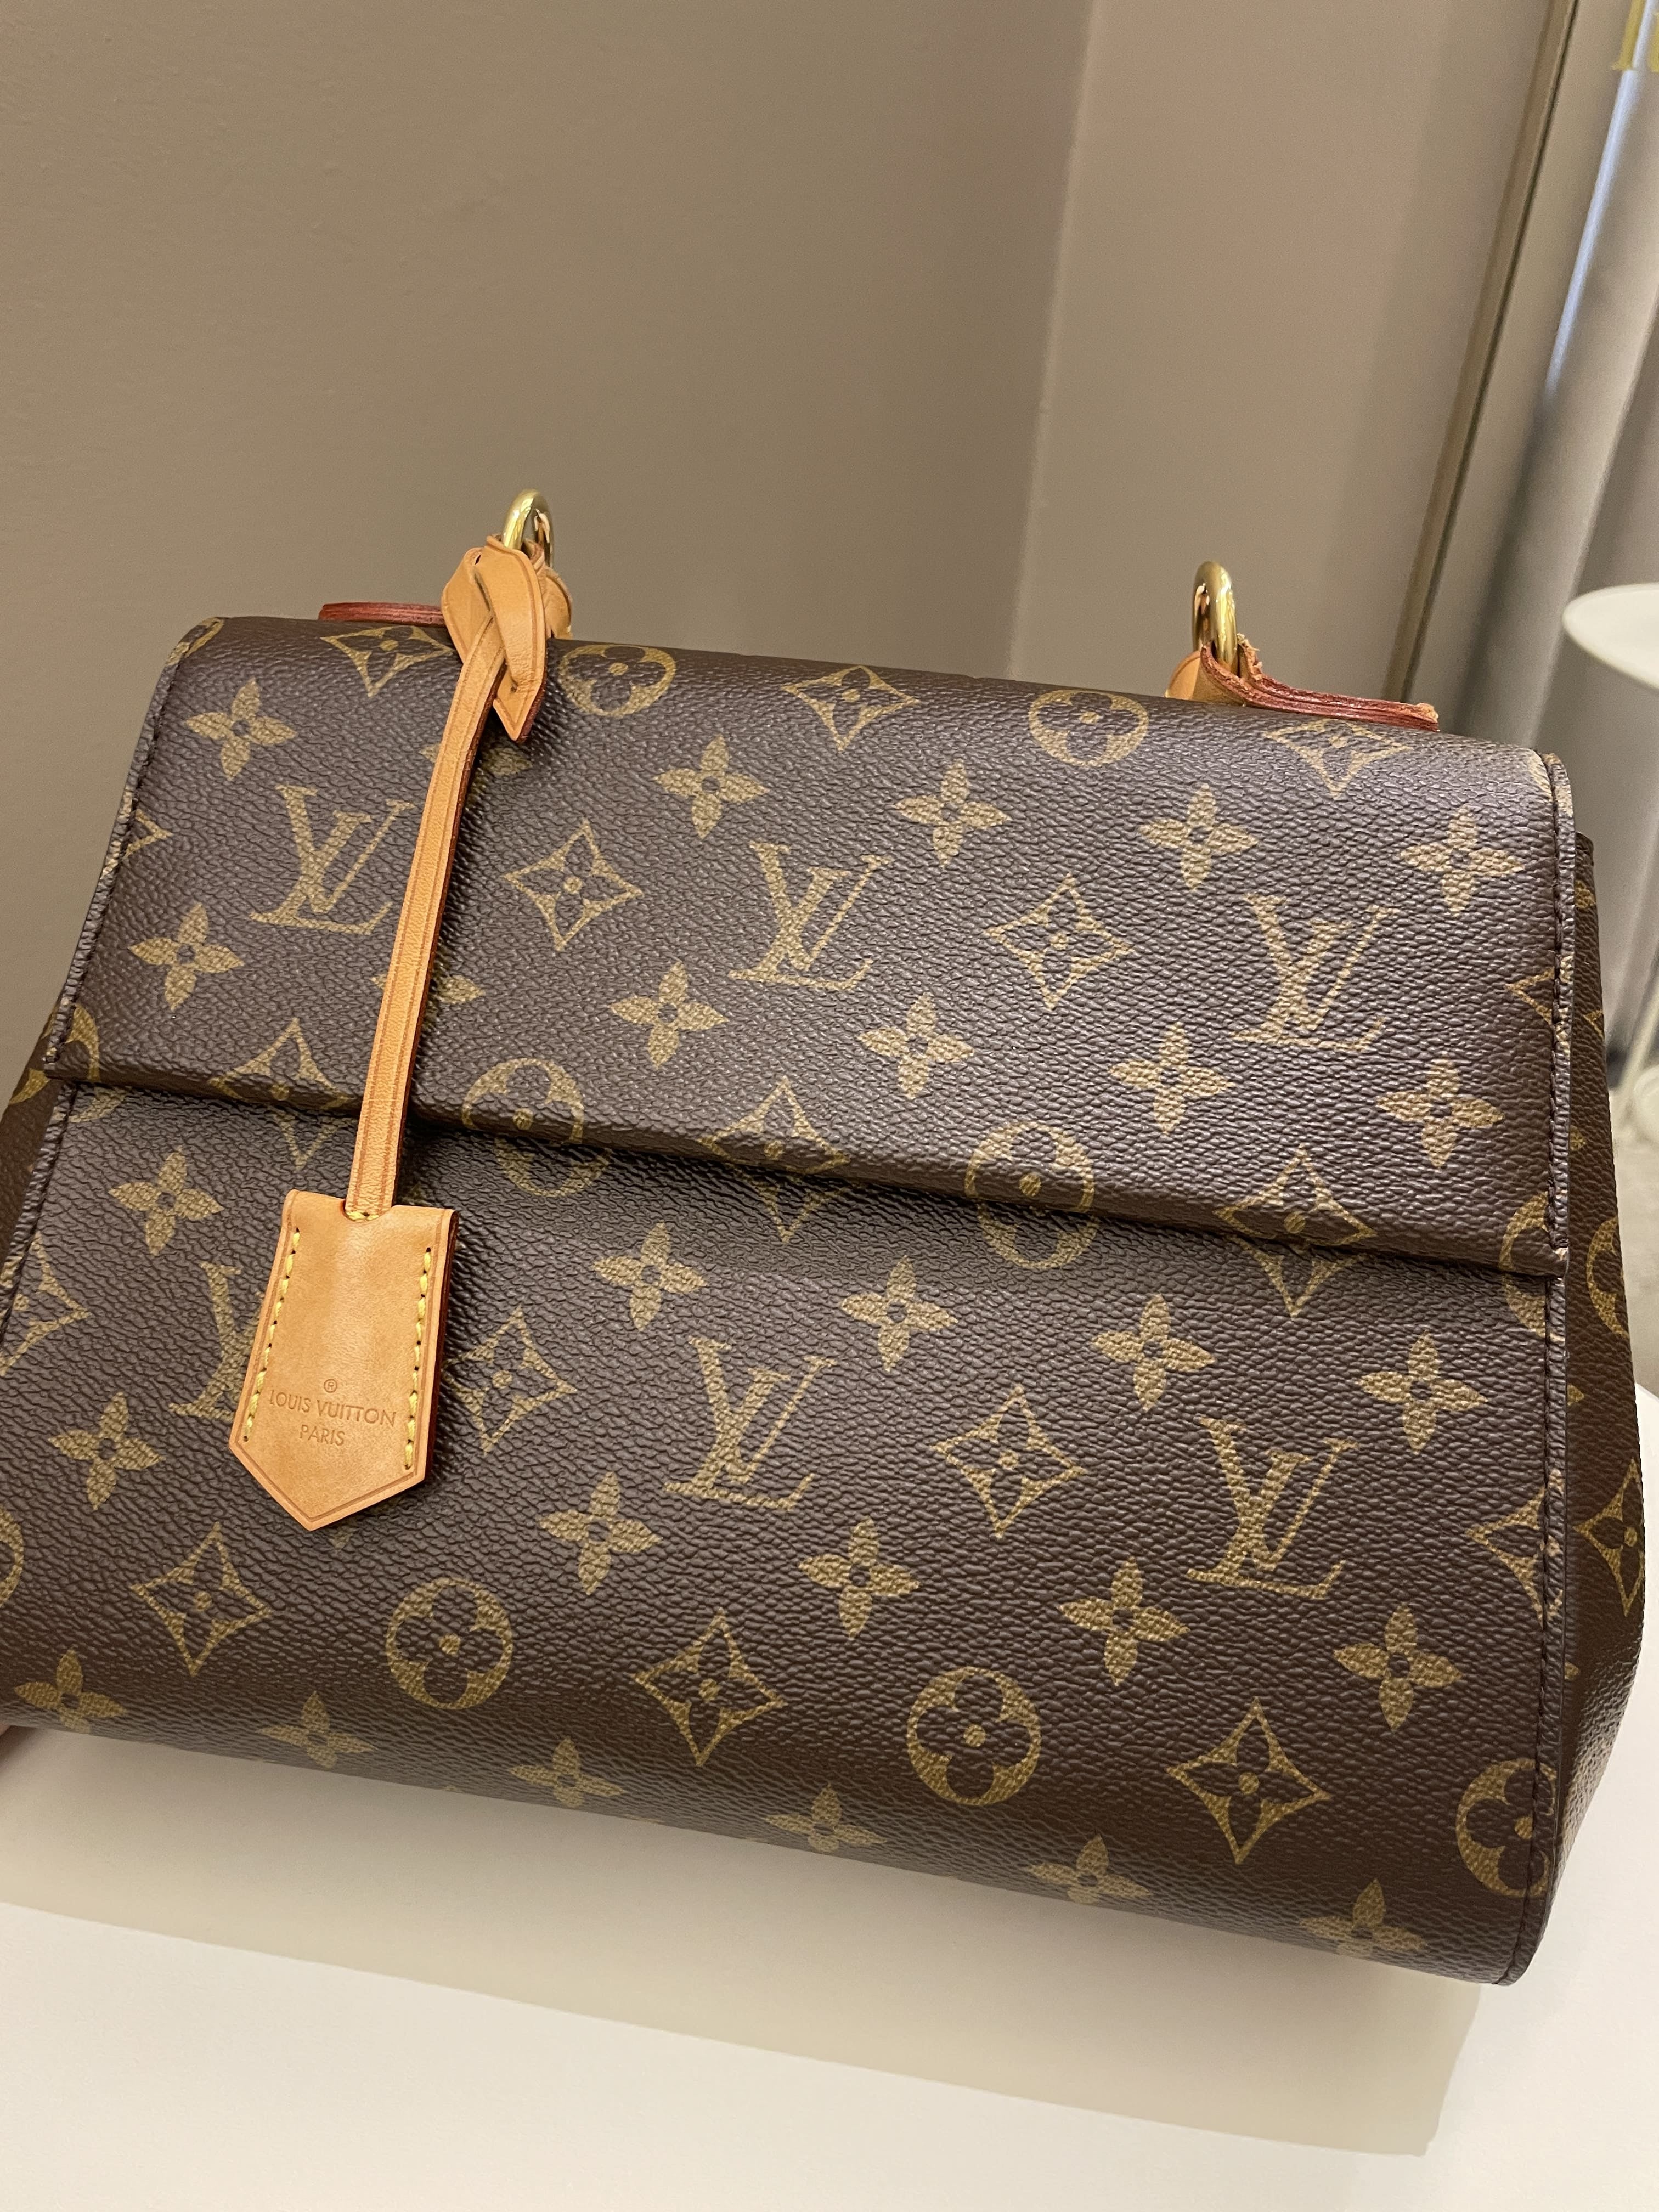 Louis Vuitton Schlüsselanhänger, € 250,- (3400 Klosterneuburg